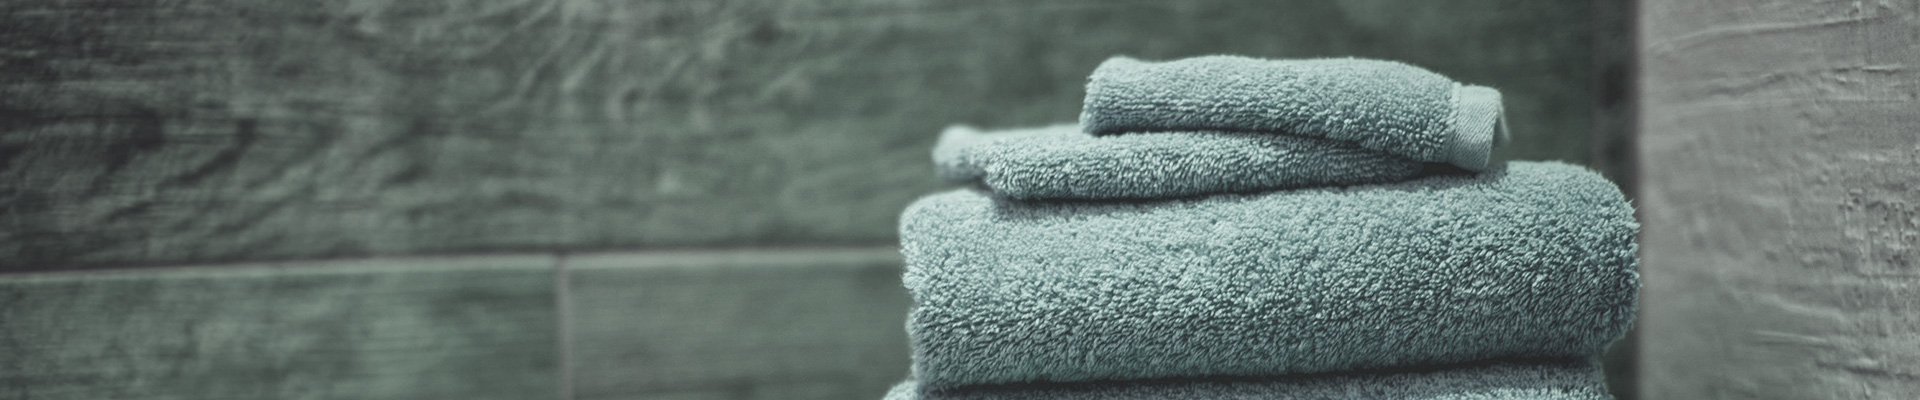 towels-banner-3.jpg